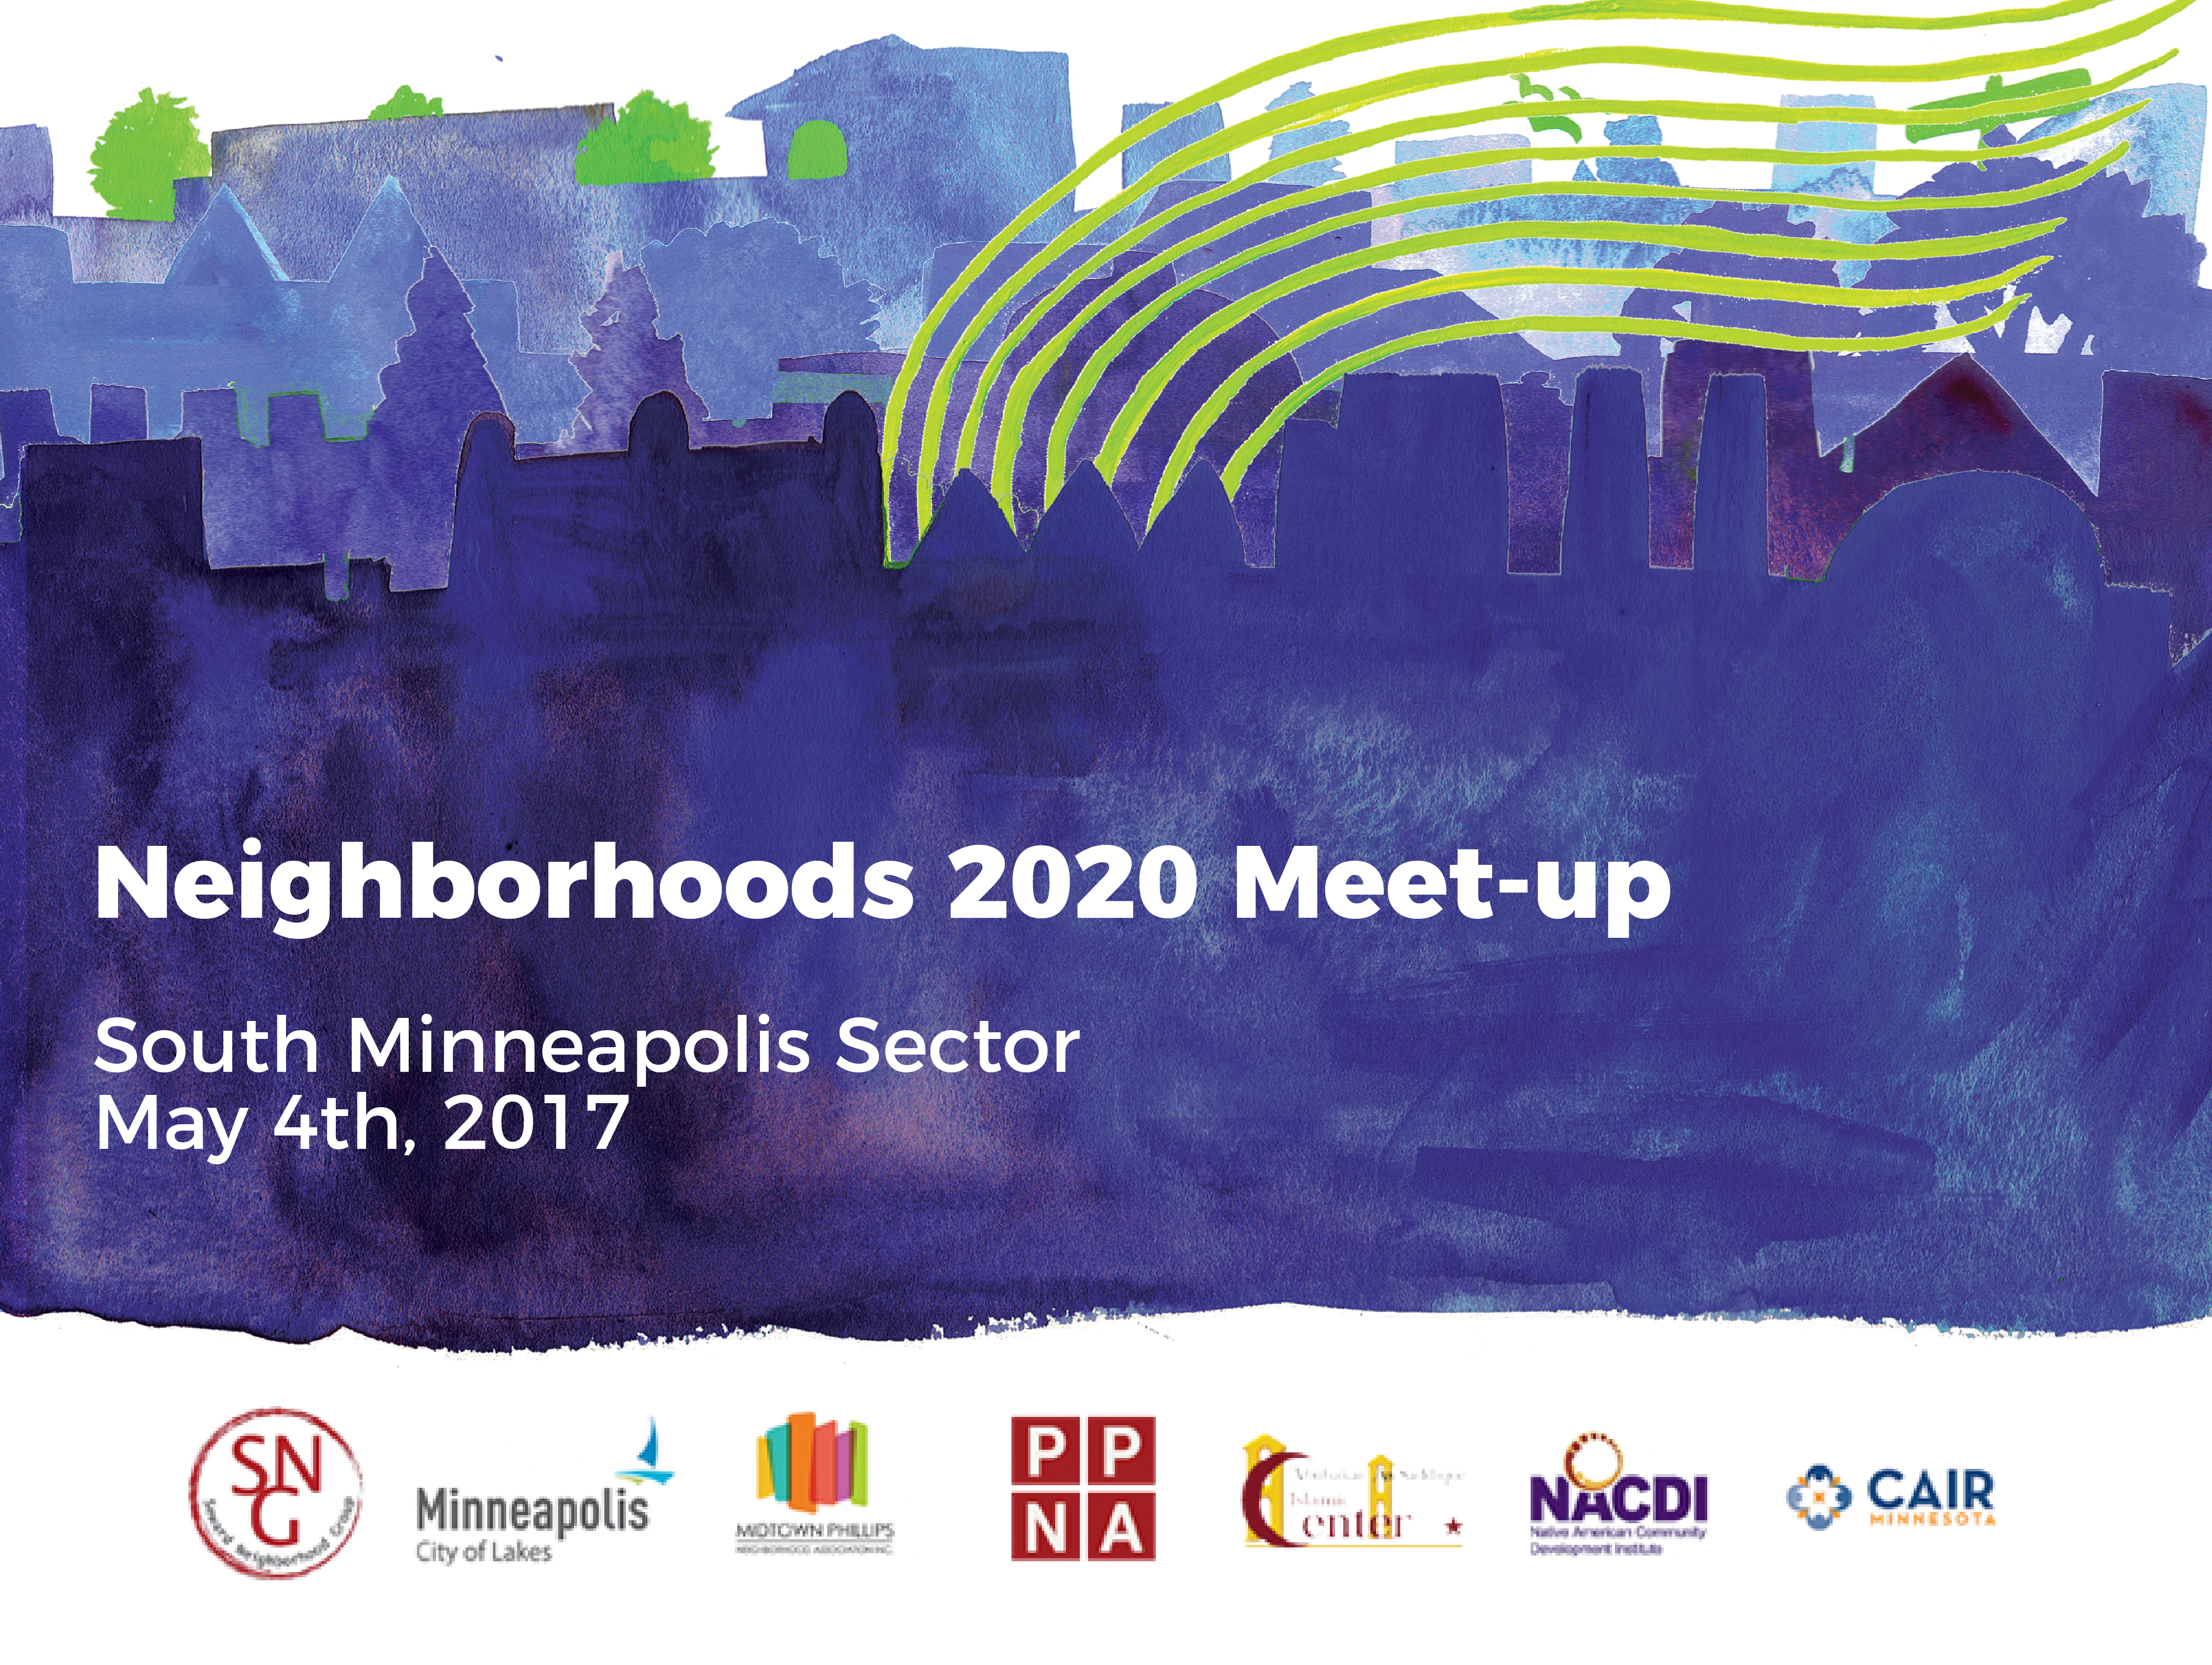 Neighborhoods 2020 Conference